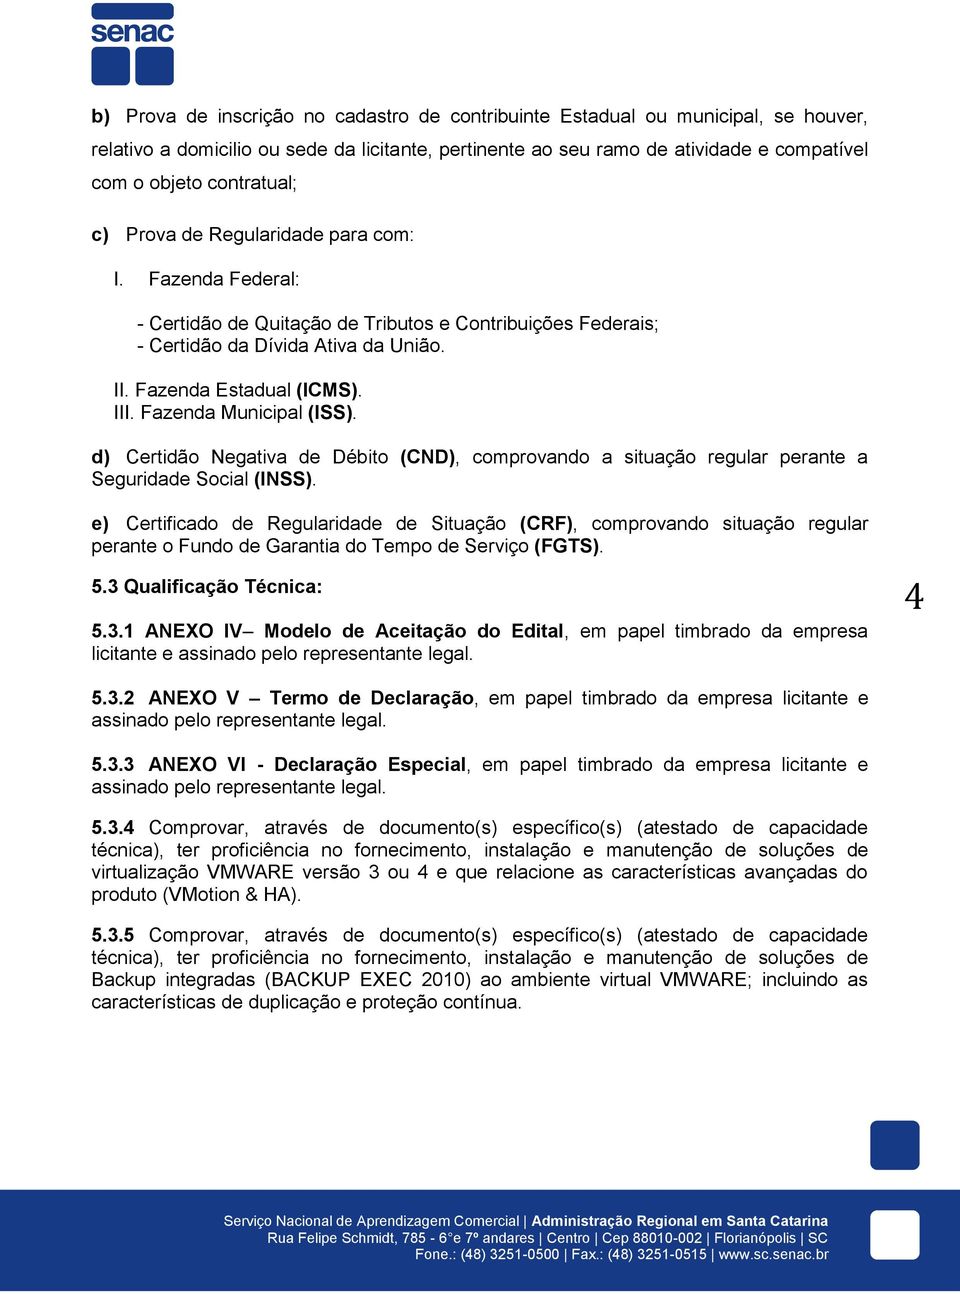 Fazenda Municipal (ISS). d) Certidão Negativa de Débito (CND), comprovando a situação regular perante a Seguridade Social (INSS).